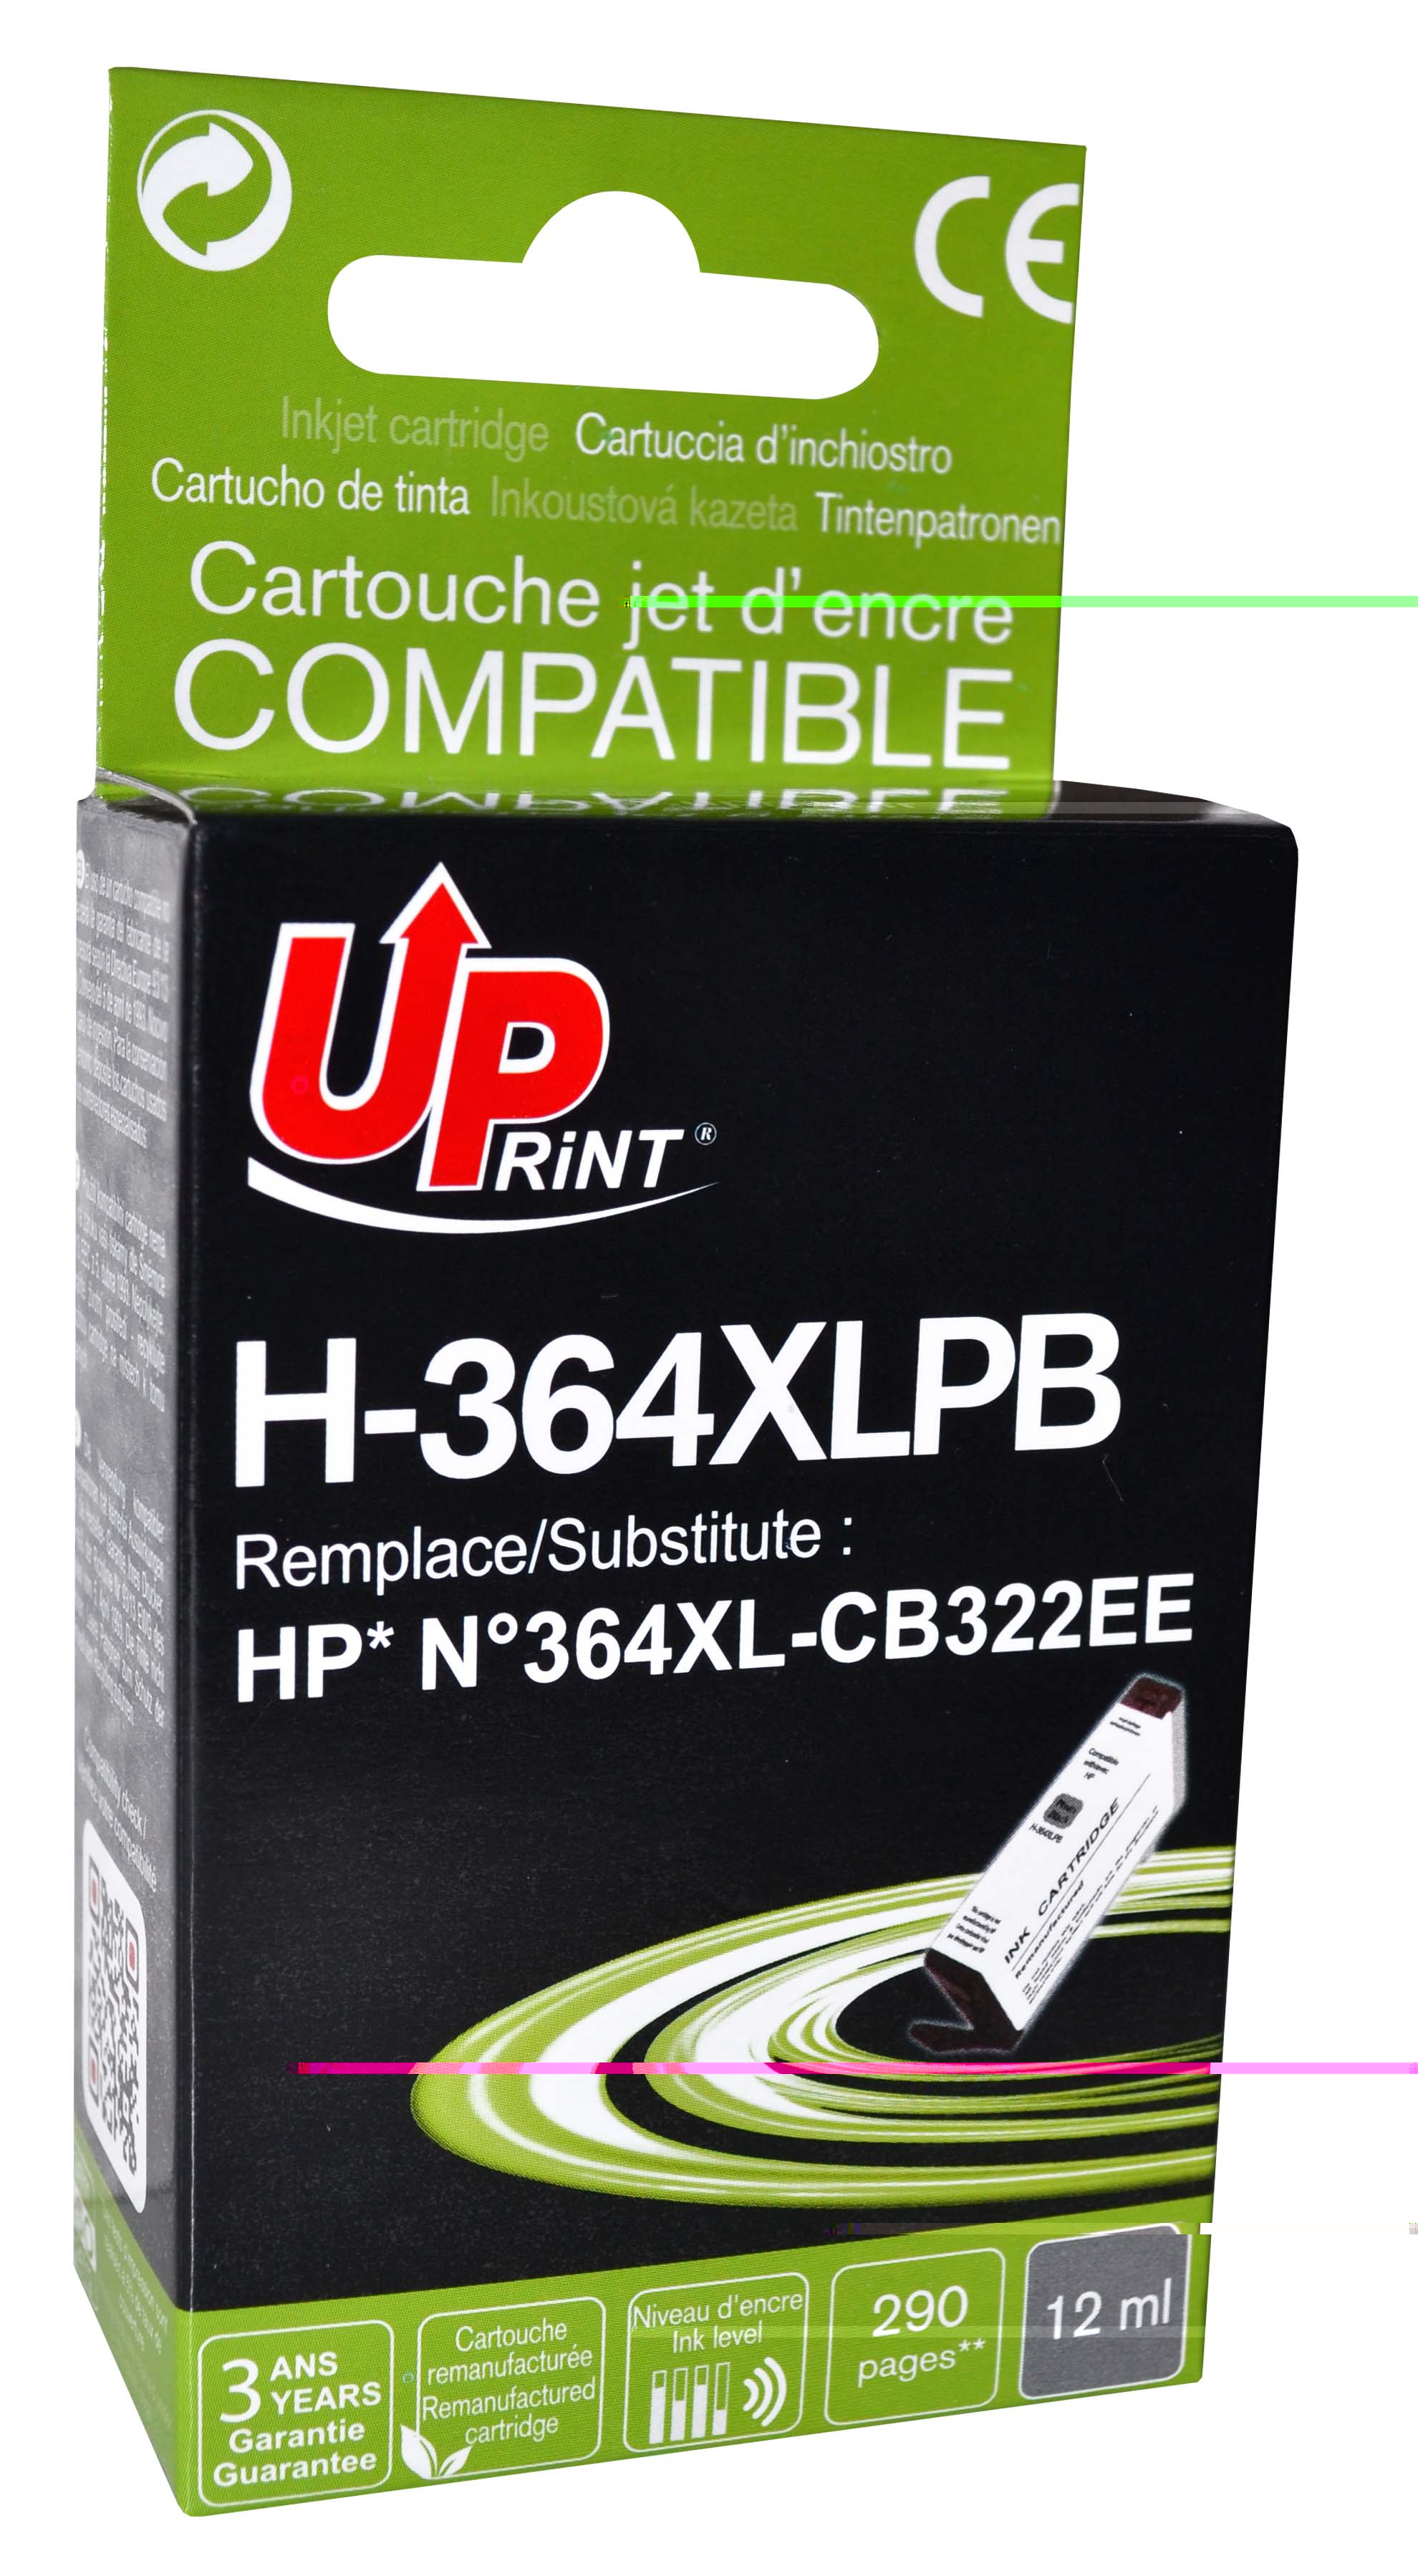 Cartouche encre UPrint compatible HP 364XL noir photo